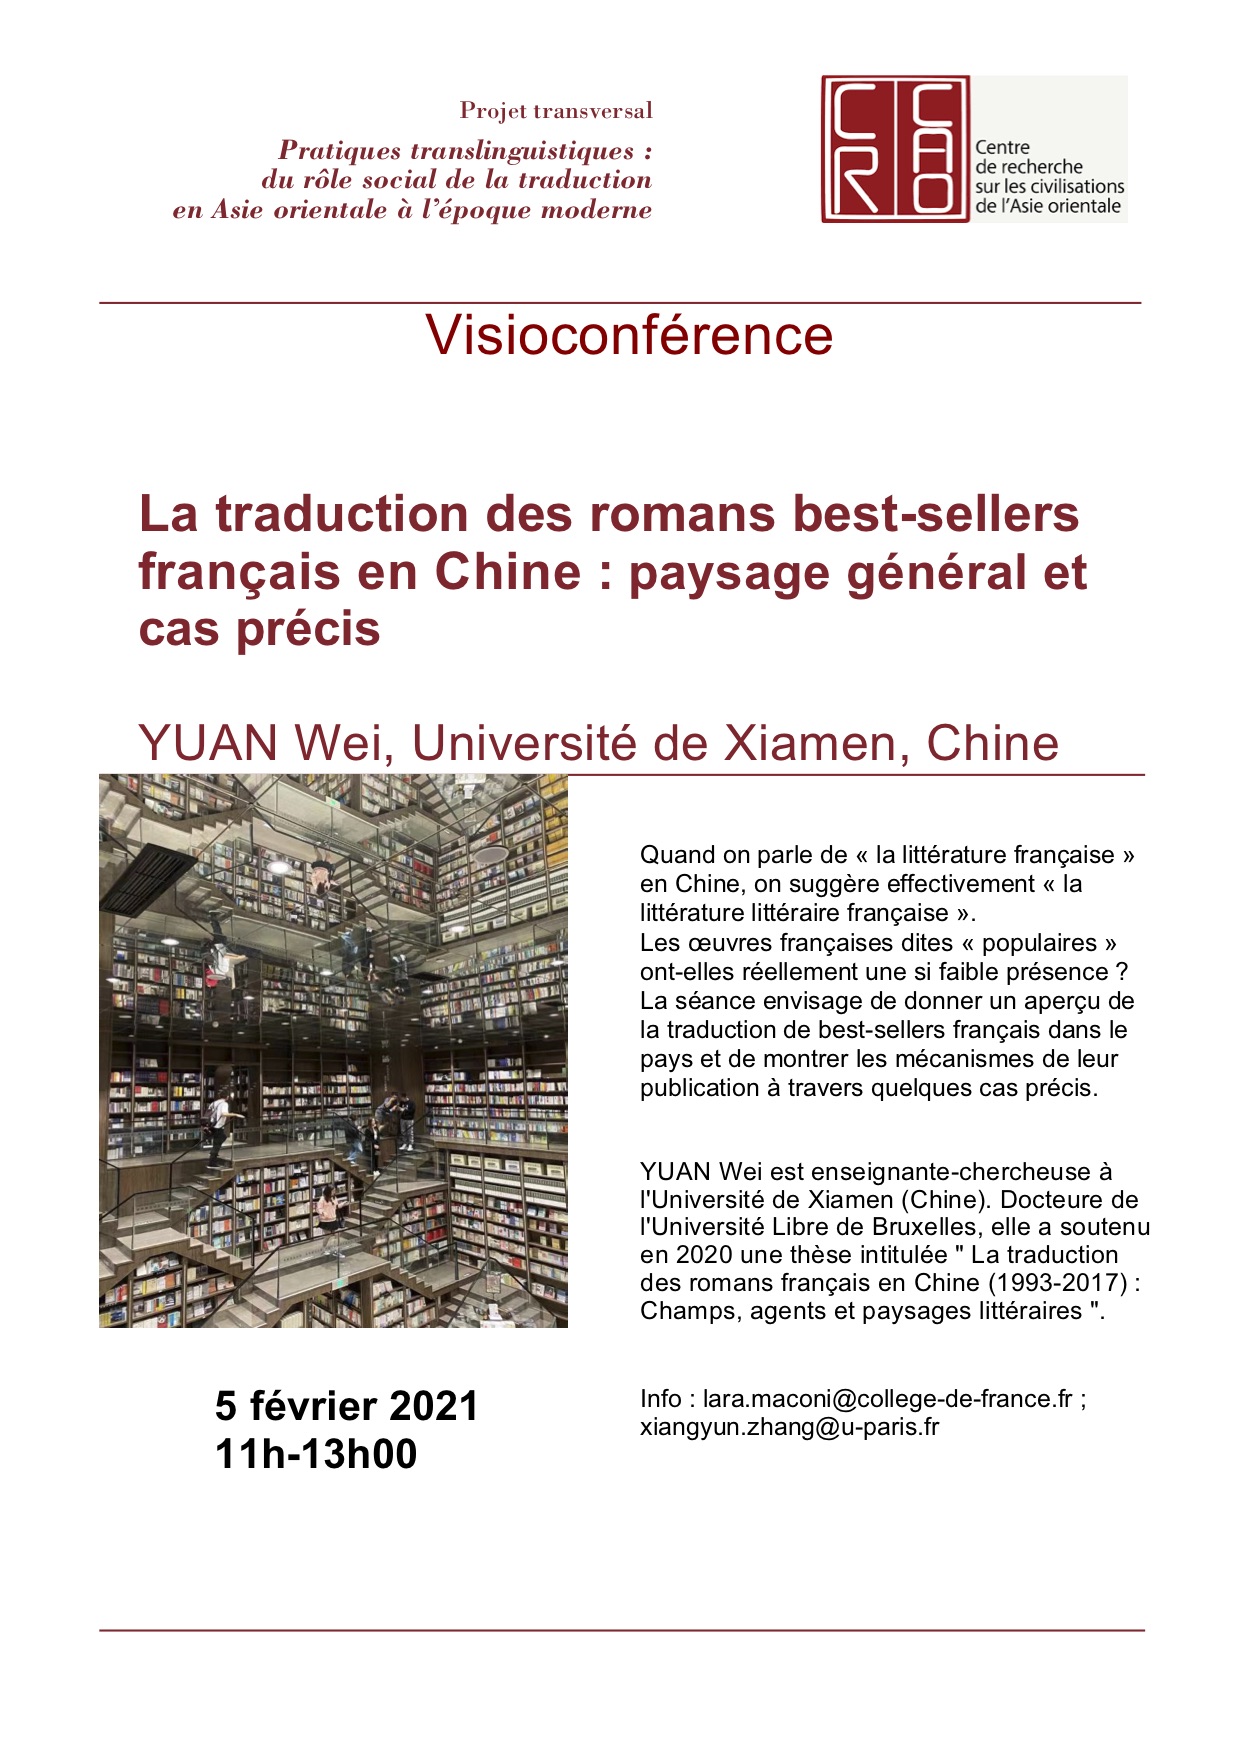 La traduction des romans best-sellers français en Chine, paysage général et cas précis : une visioconférence de YUAN Wei le 5 février